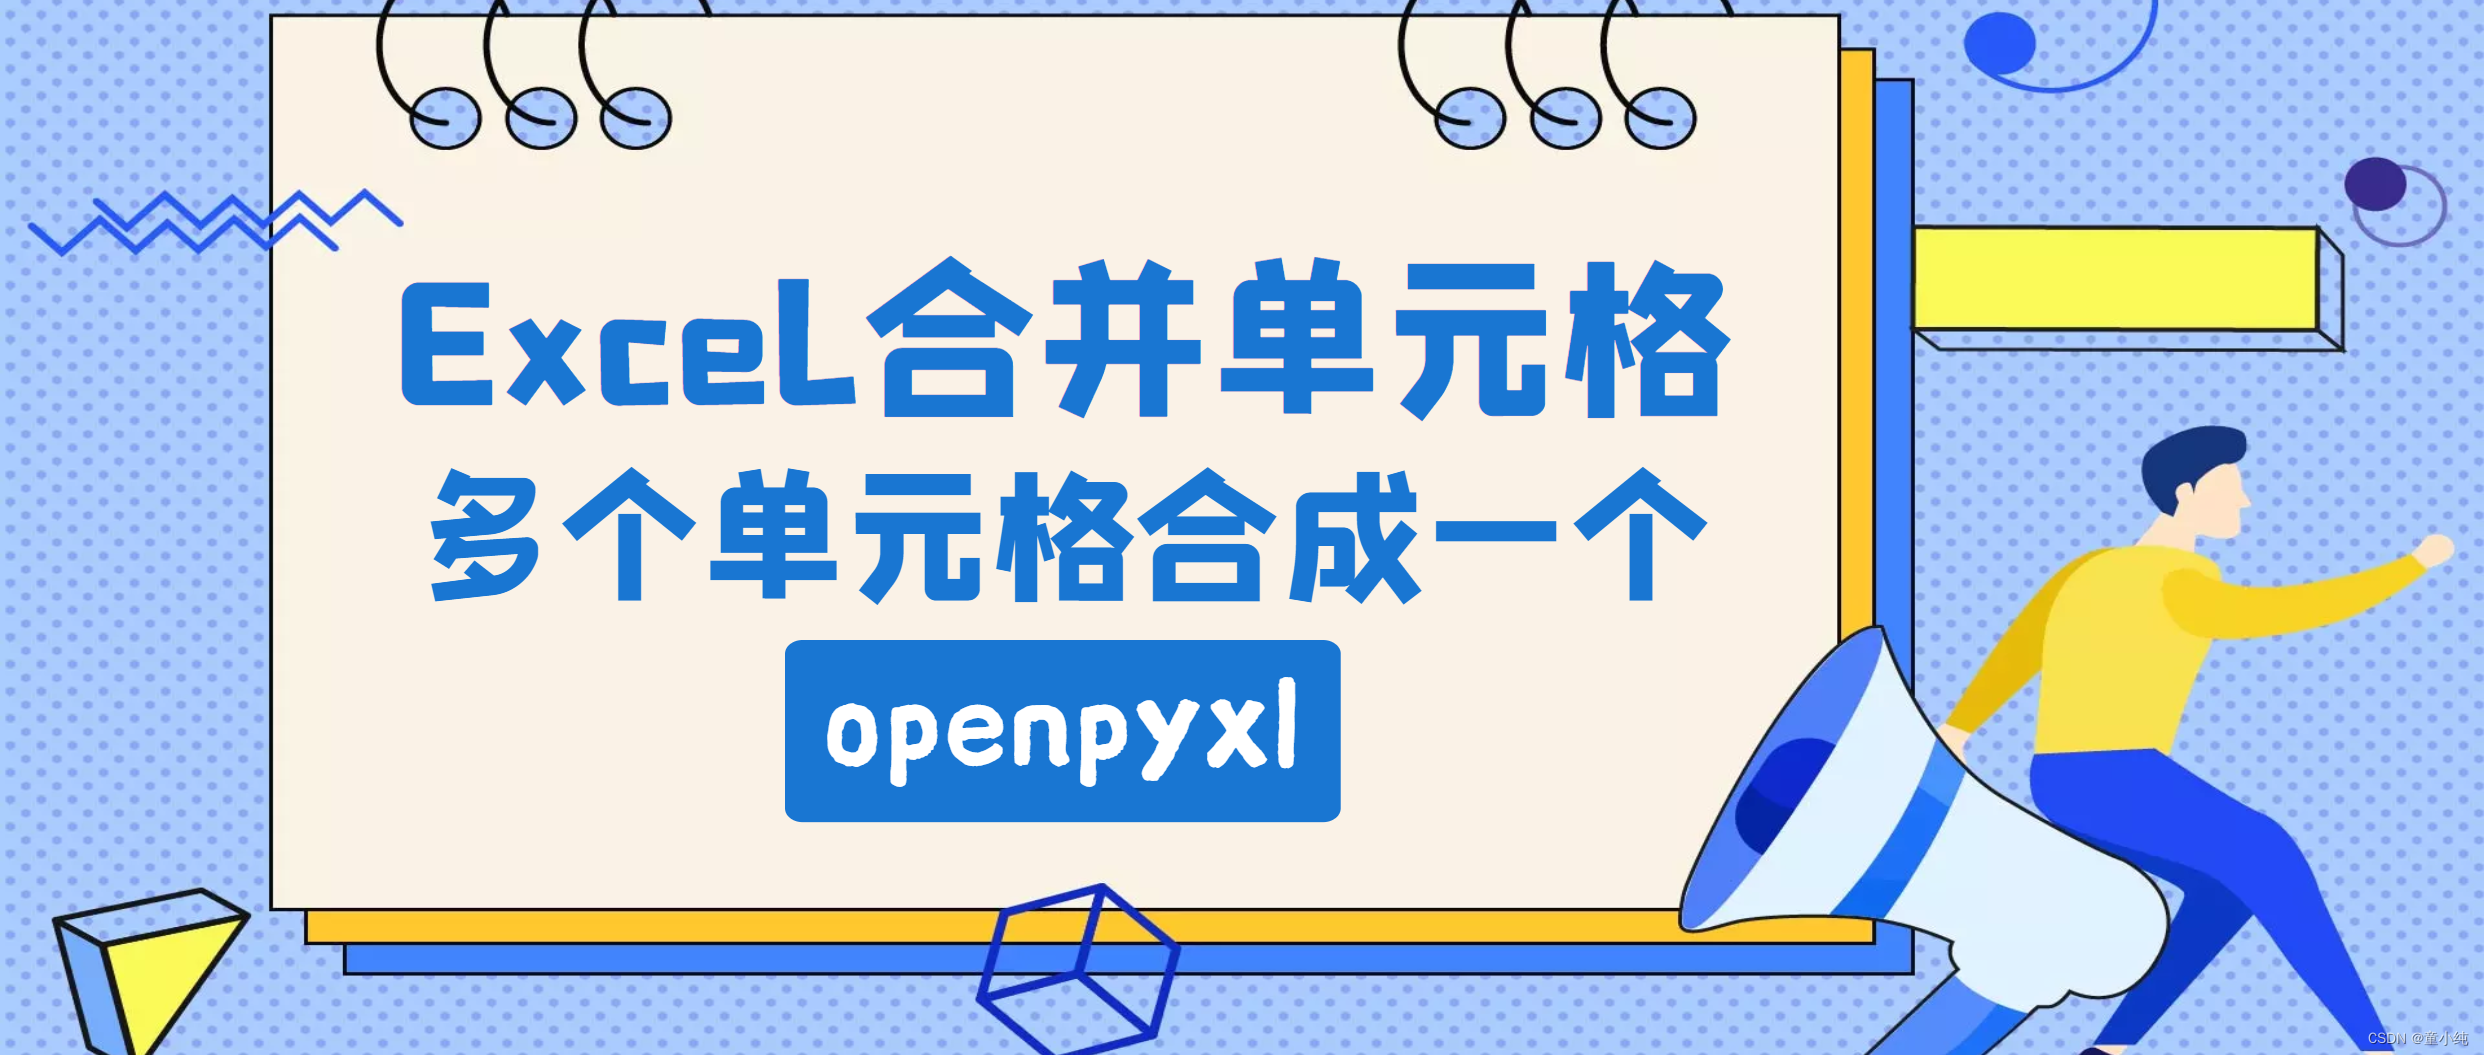 Python办公自动化【合并单元格-openpyxl、增加图表-openpyxl、合并工作薄-openpyxl、合并多个文件工作薄-openpyxl】(三)-全面详解（学习总结---从入门到深化）